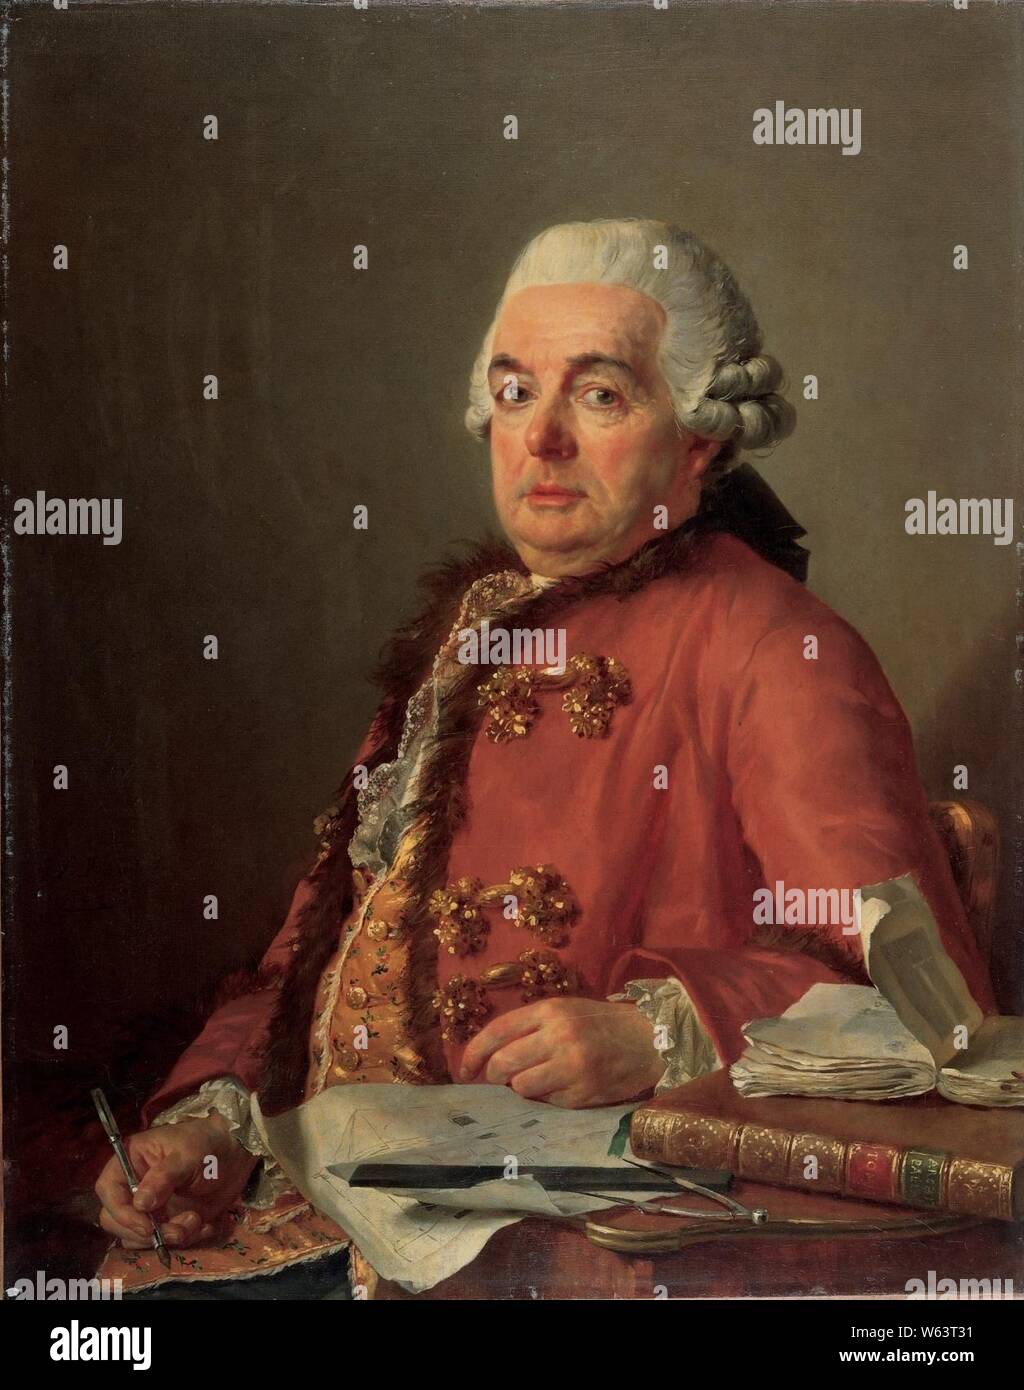 Jacques-Louis David - Portrait of Jacques-François Desmaisons - Stock Photo